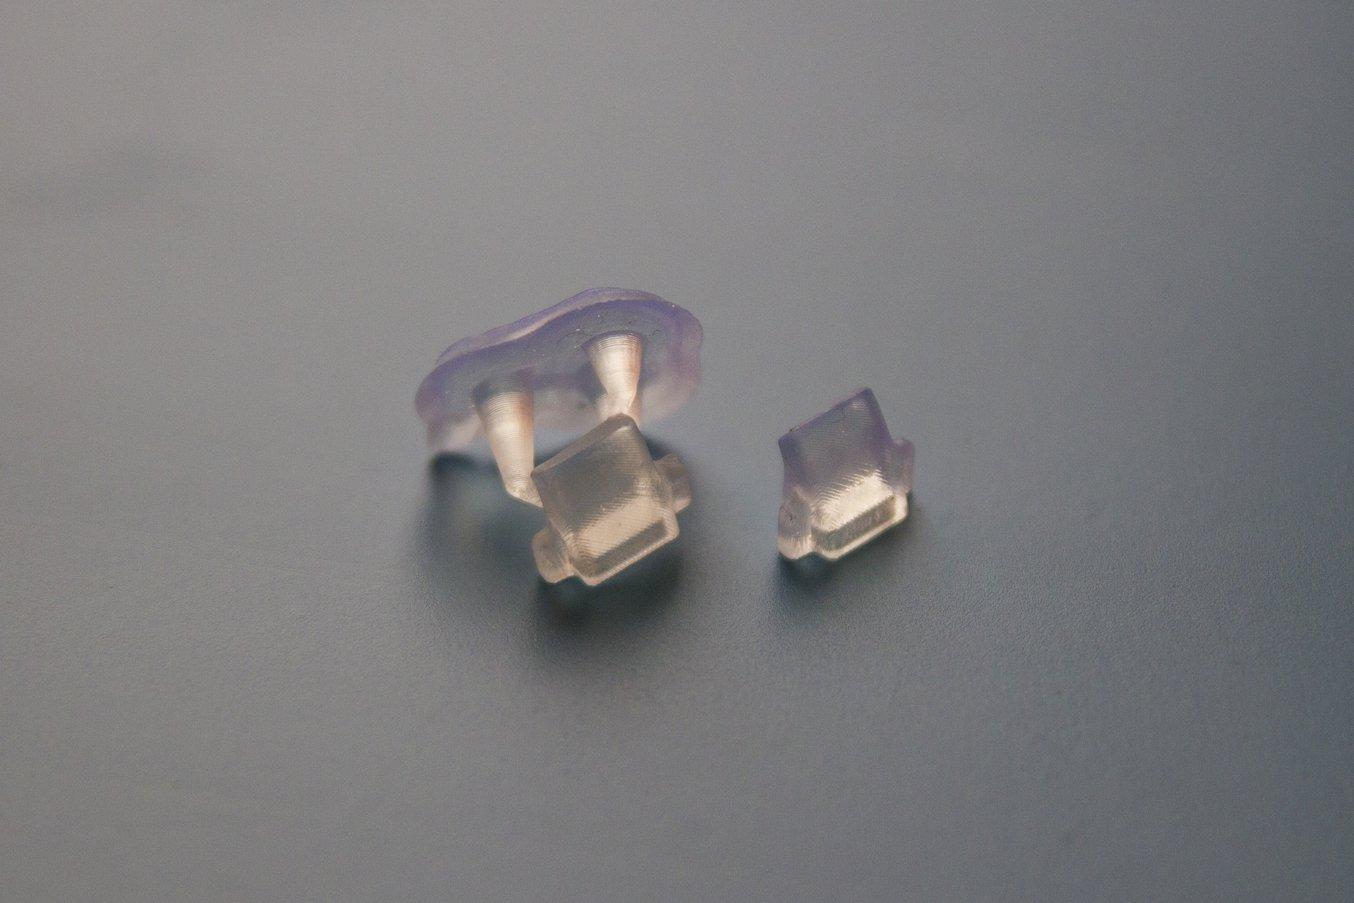 Nach dem Spülen können die Teile mit Novus 1 Acrylglasreiniger (oder der Politur Ihrer Wahl) poliert werden.